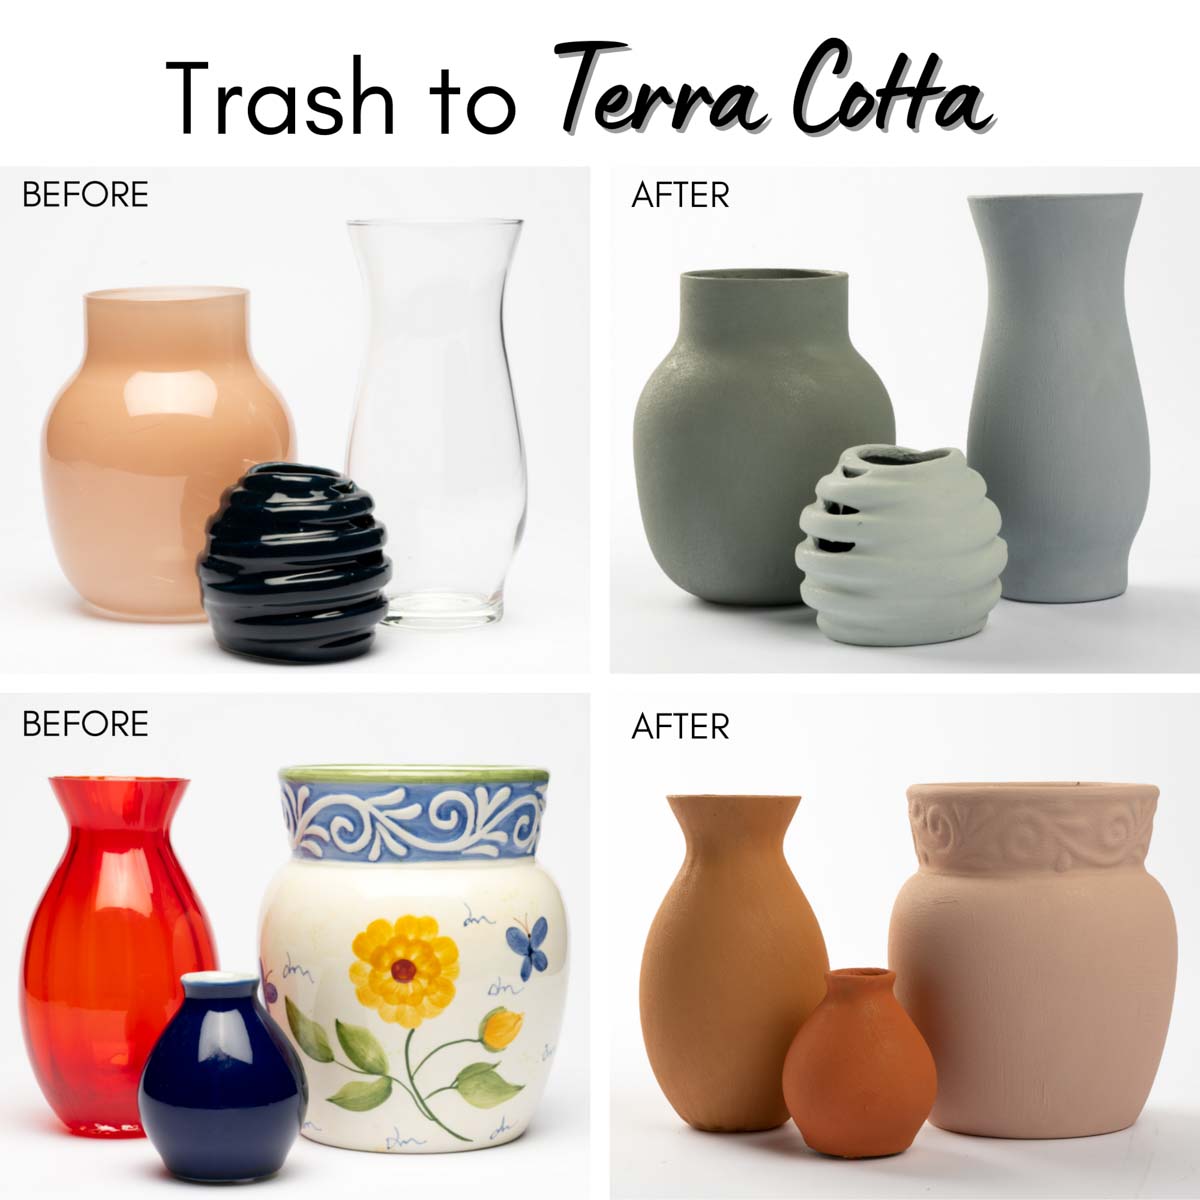 FolkArt ® Terra Cotta™ Acrylic Paint - Shale Green, 2 oz. - 7022